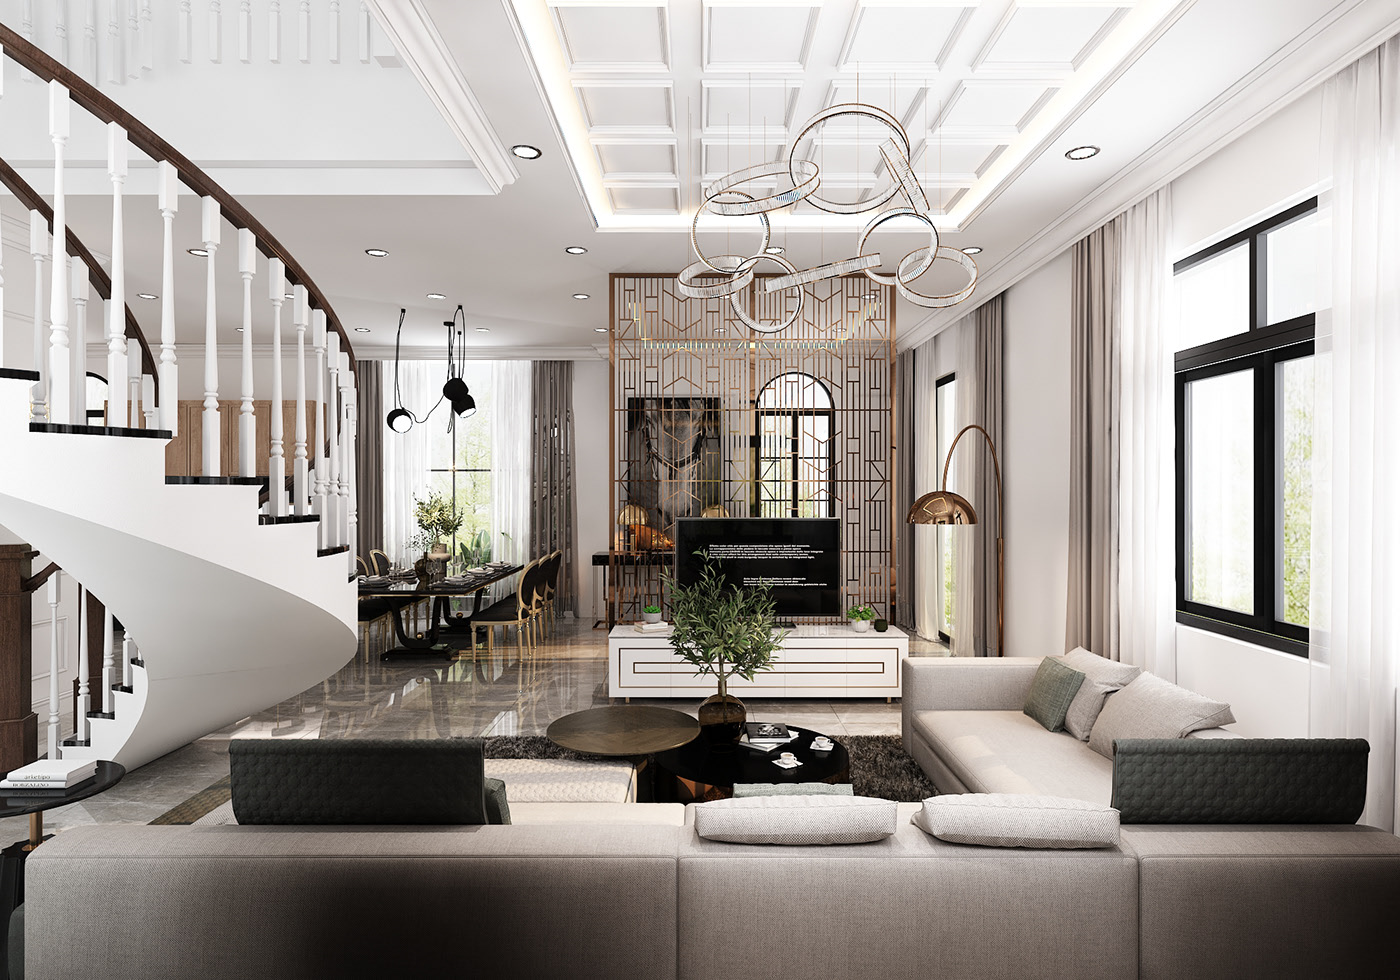 Thiết kế nội thất Biệt Thự tại Lâm Đồng BIỆT THỰ LÂM HÀ 1595652251 2